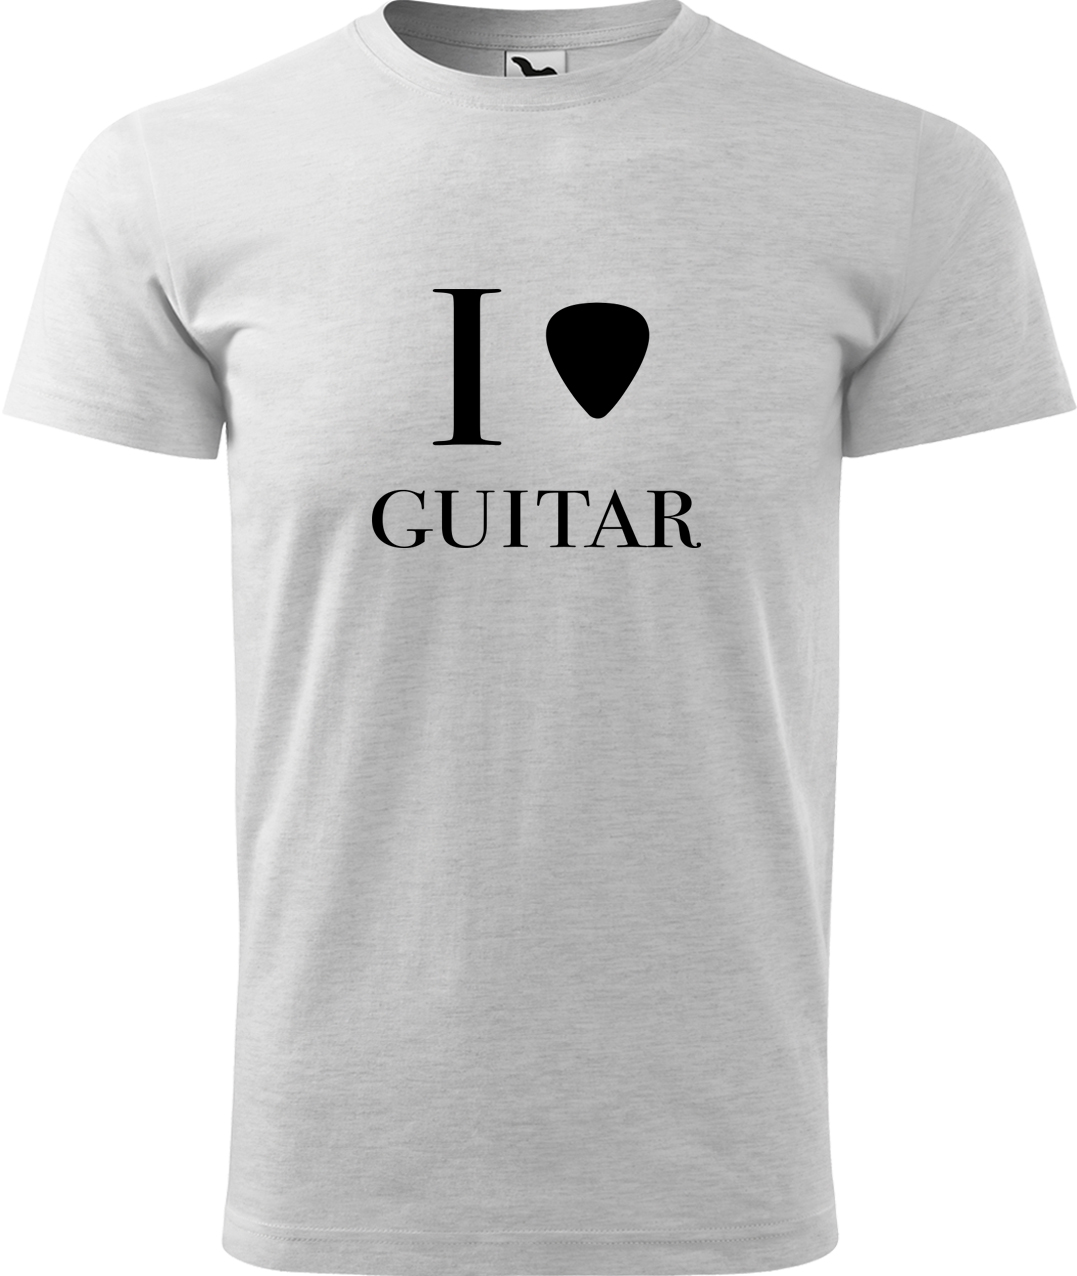 Pánské tričko s kytarou - I love guitar Velikost: S, Barva: Světle šedý melír (03), Střih: pánský